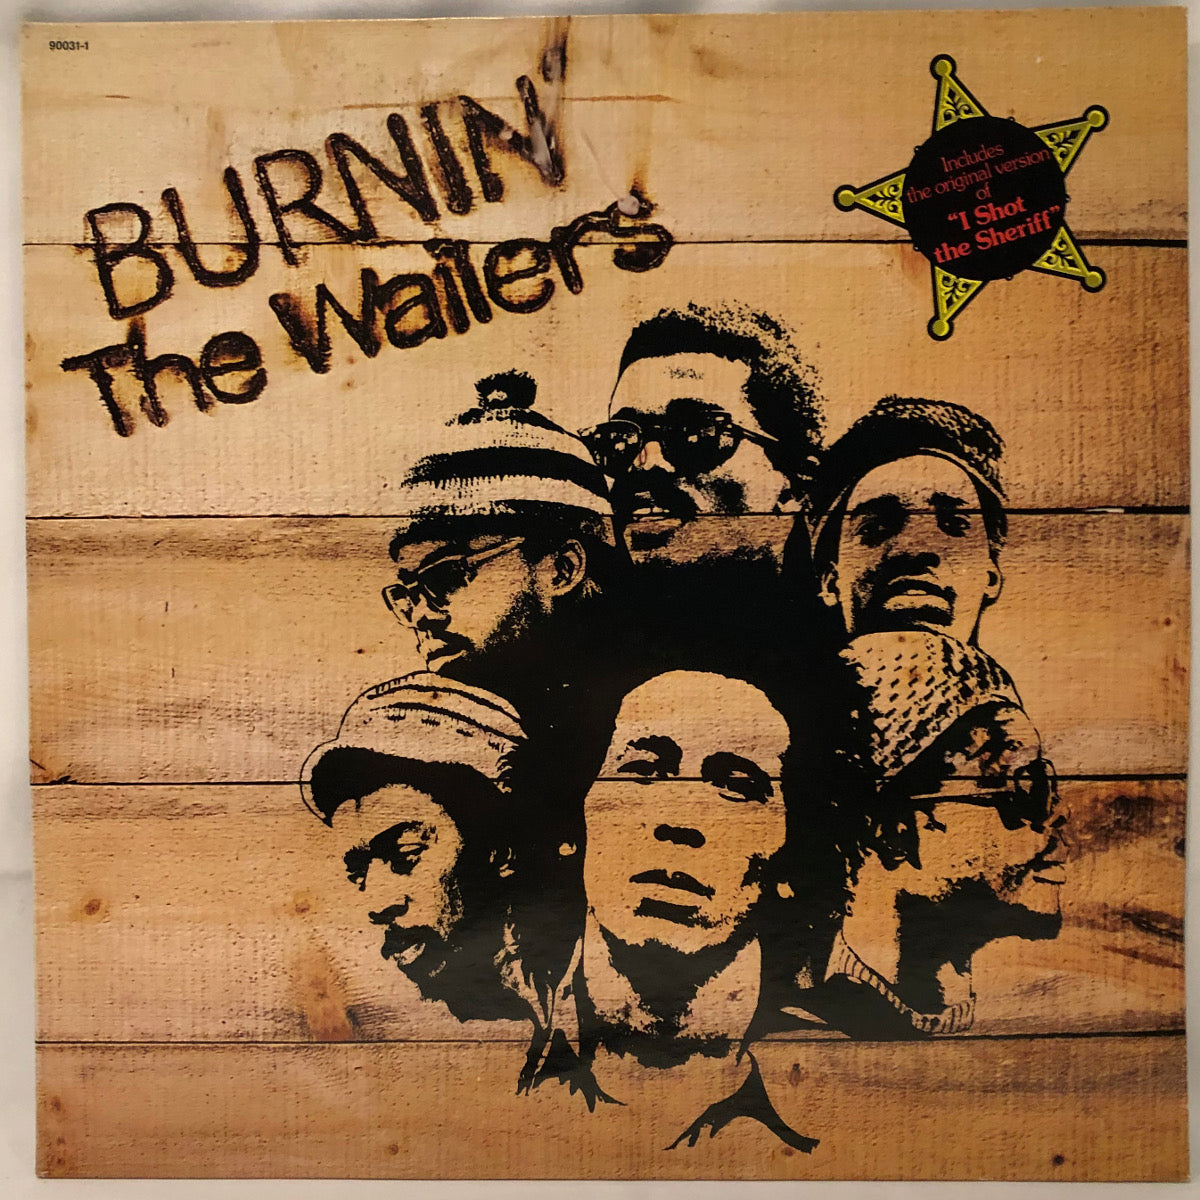 The Wailers – Burnin'